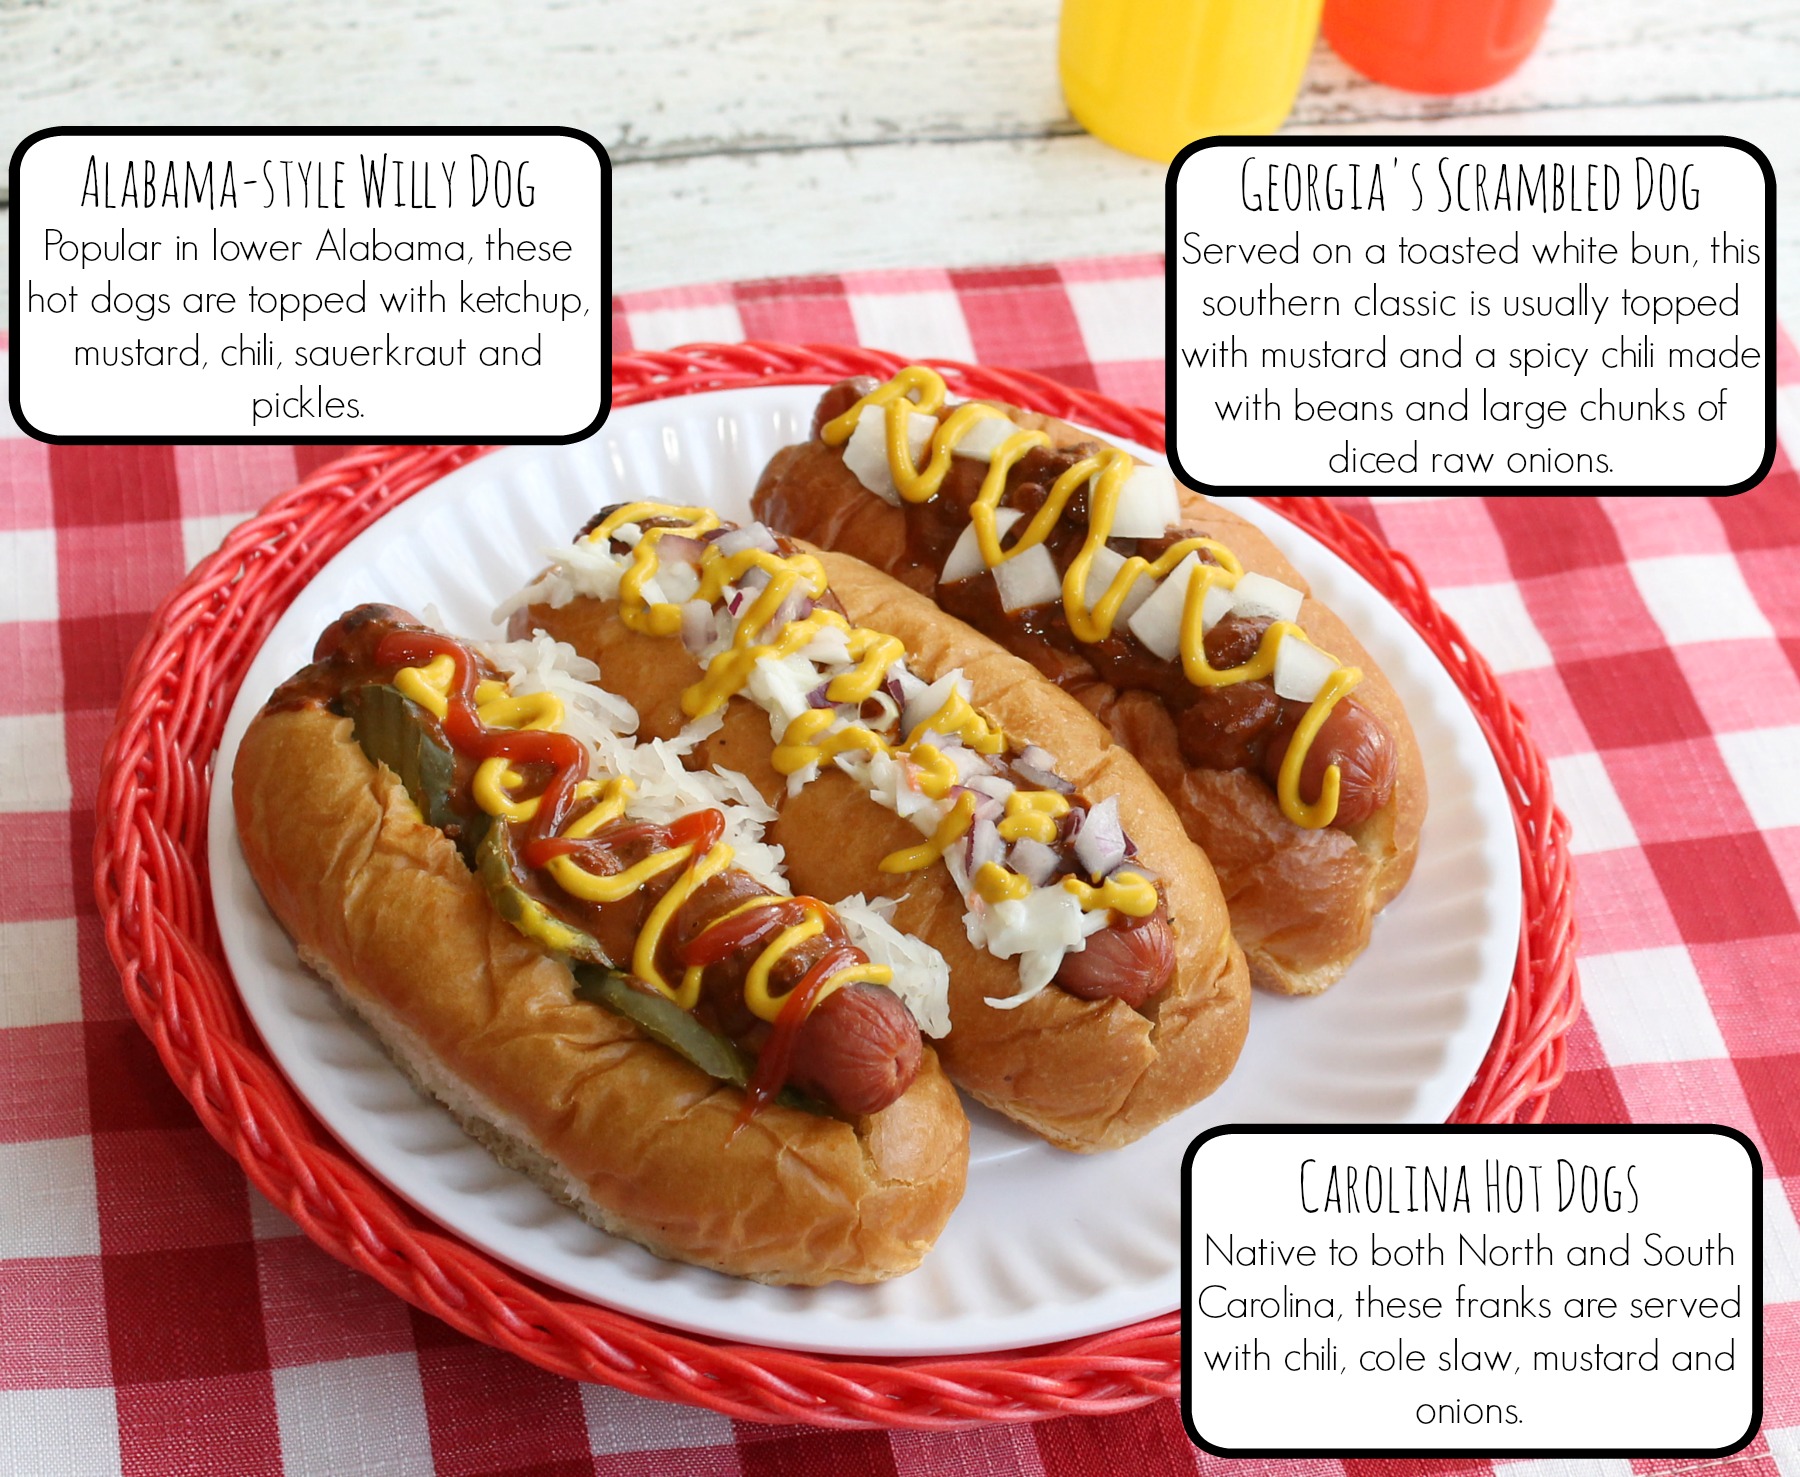 Regional Hot Dogs - Alabama Willy DogScrambled DogCarolina Hot Dog